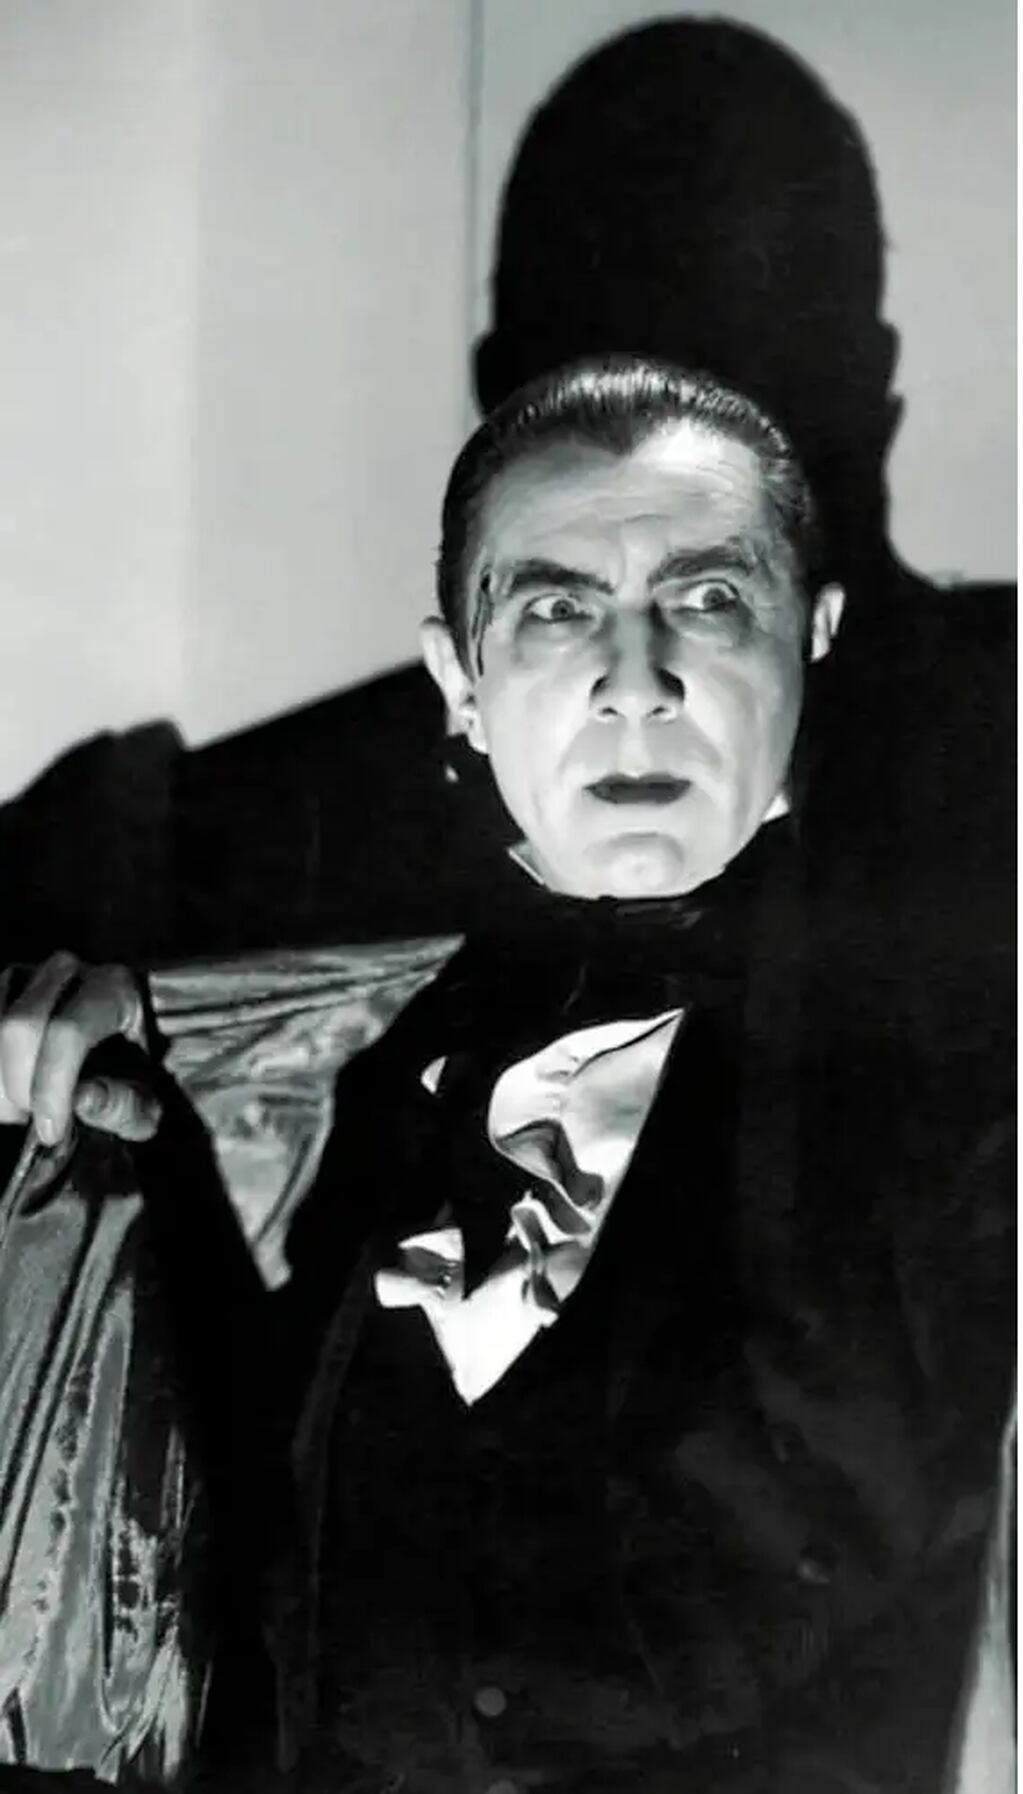 Drácula, encarnado, entre otros actores, en la pantalla por Bela Lugosi, representa según Ovejero "el miedo a morir". Gentileza: La Razón.